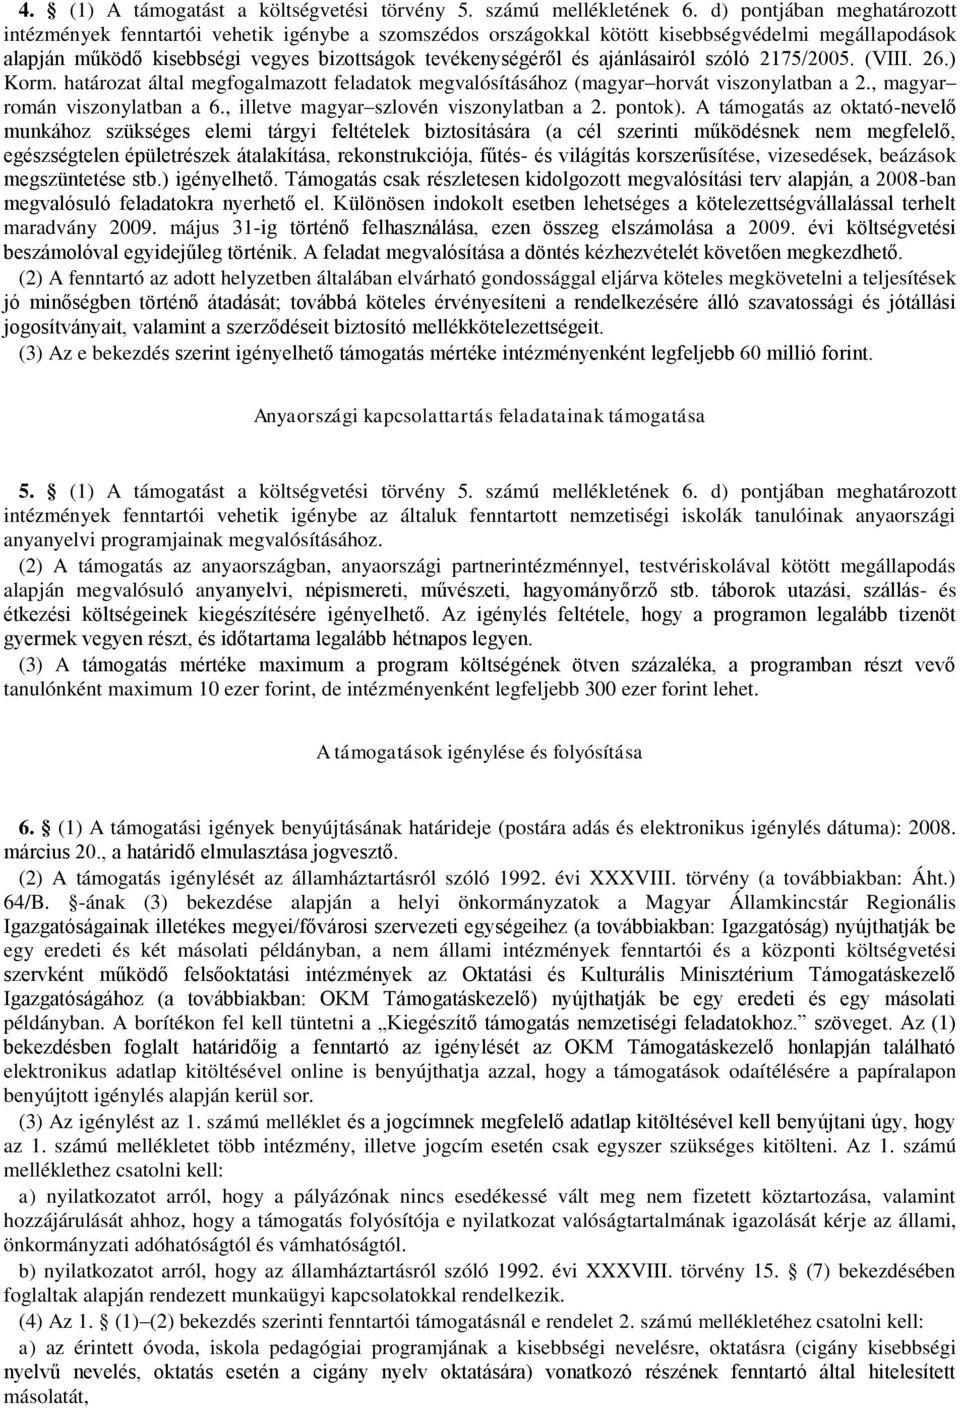 ajánlásairól szóló 2175/2005. (VIII. 26.) Korm. határozat által megfogalmazott feladatok megvalósításához (magyar horvát viszonylatban a 2., magyar román viszonylatban a 6.